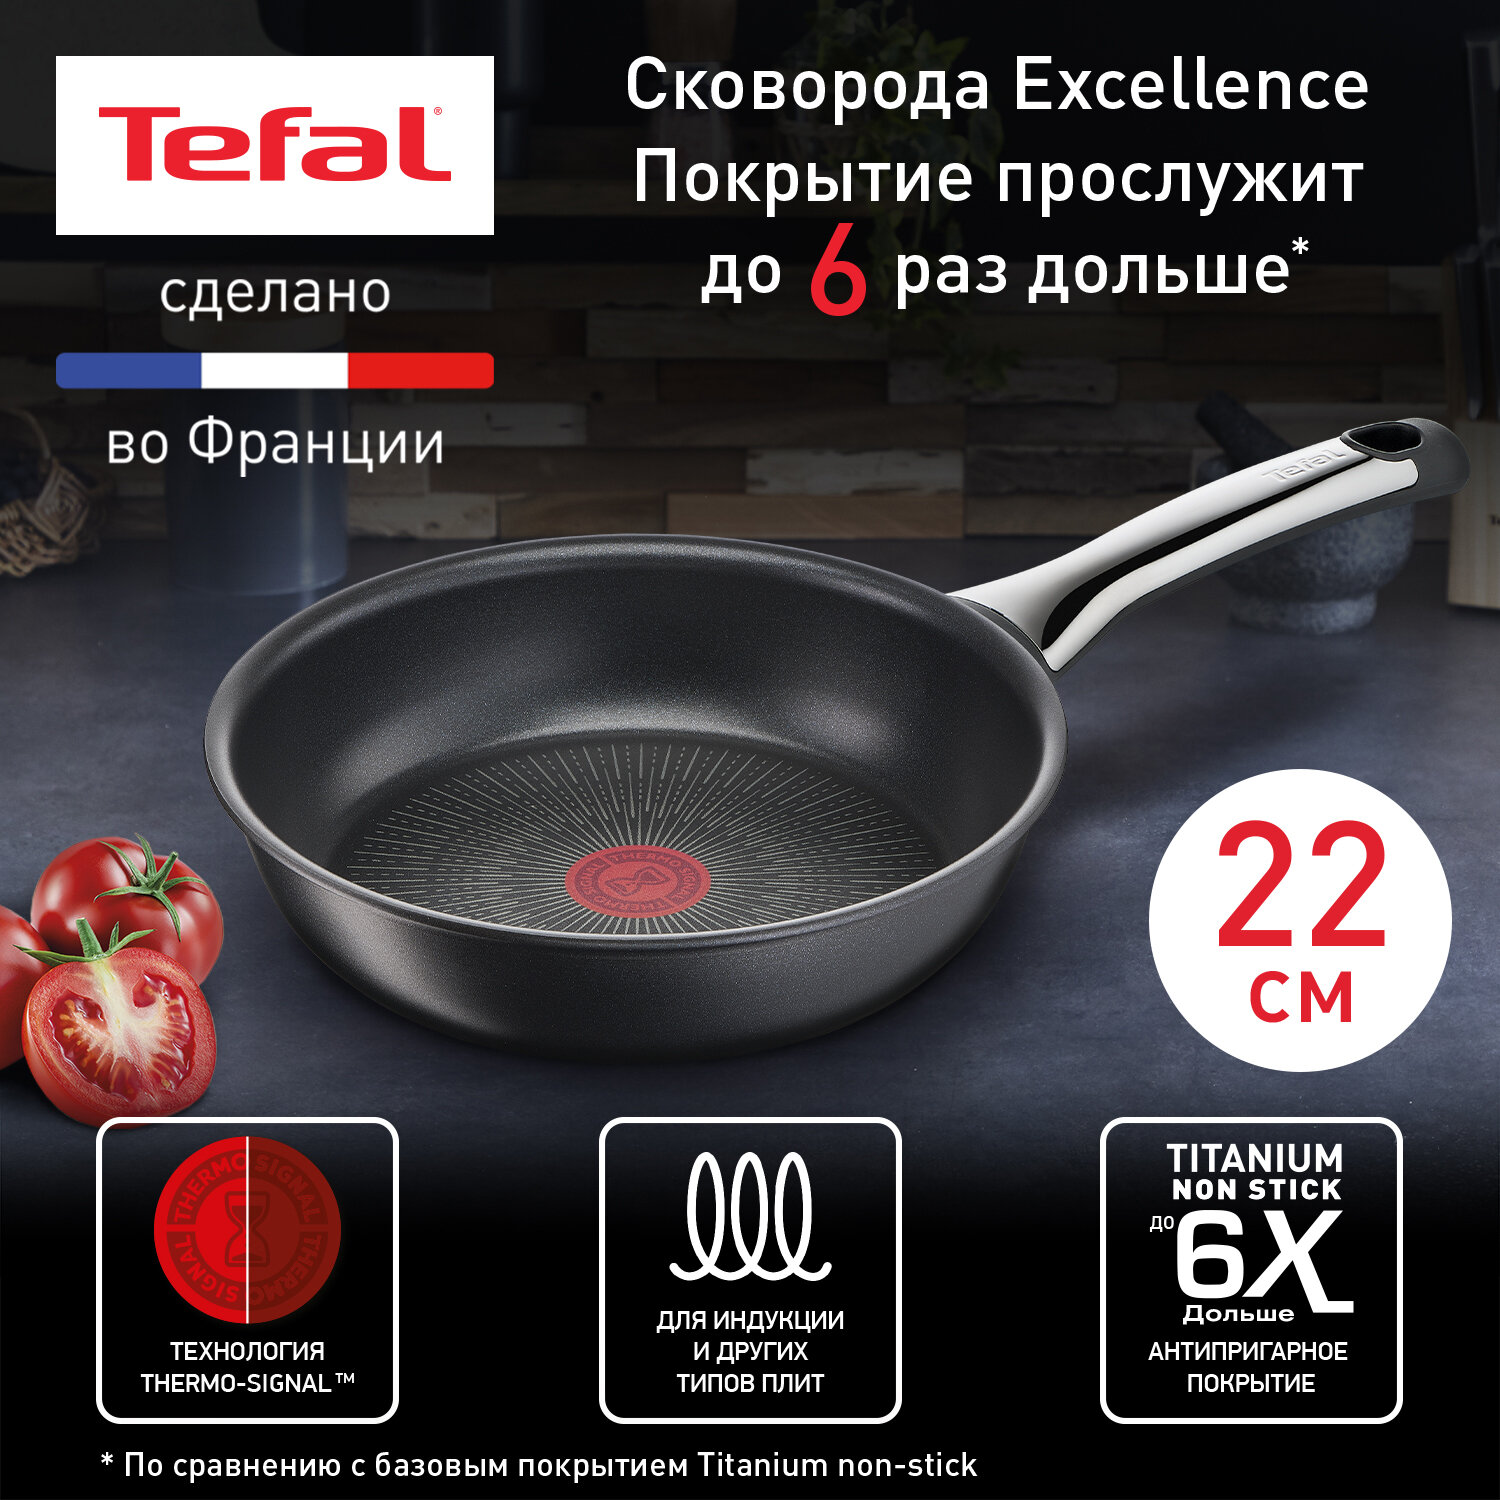 Сковорода Tefal Excellence G2690372, 22 см, с индикатором температуры, глубокая с антипригарным покрытием, подходит для индукции, сделано во Франции